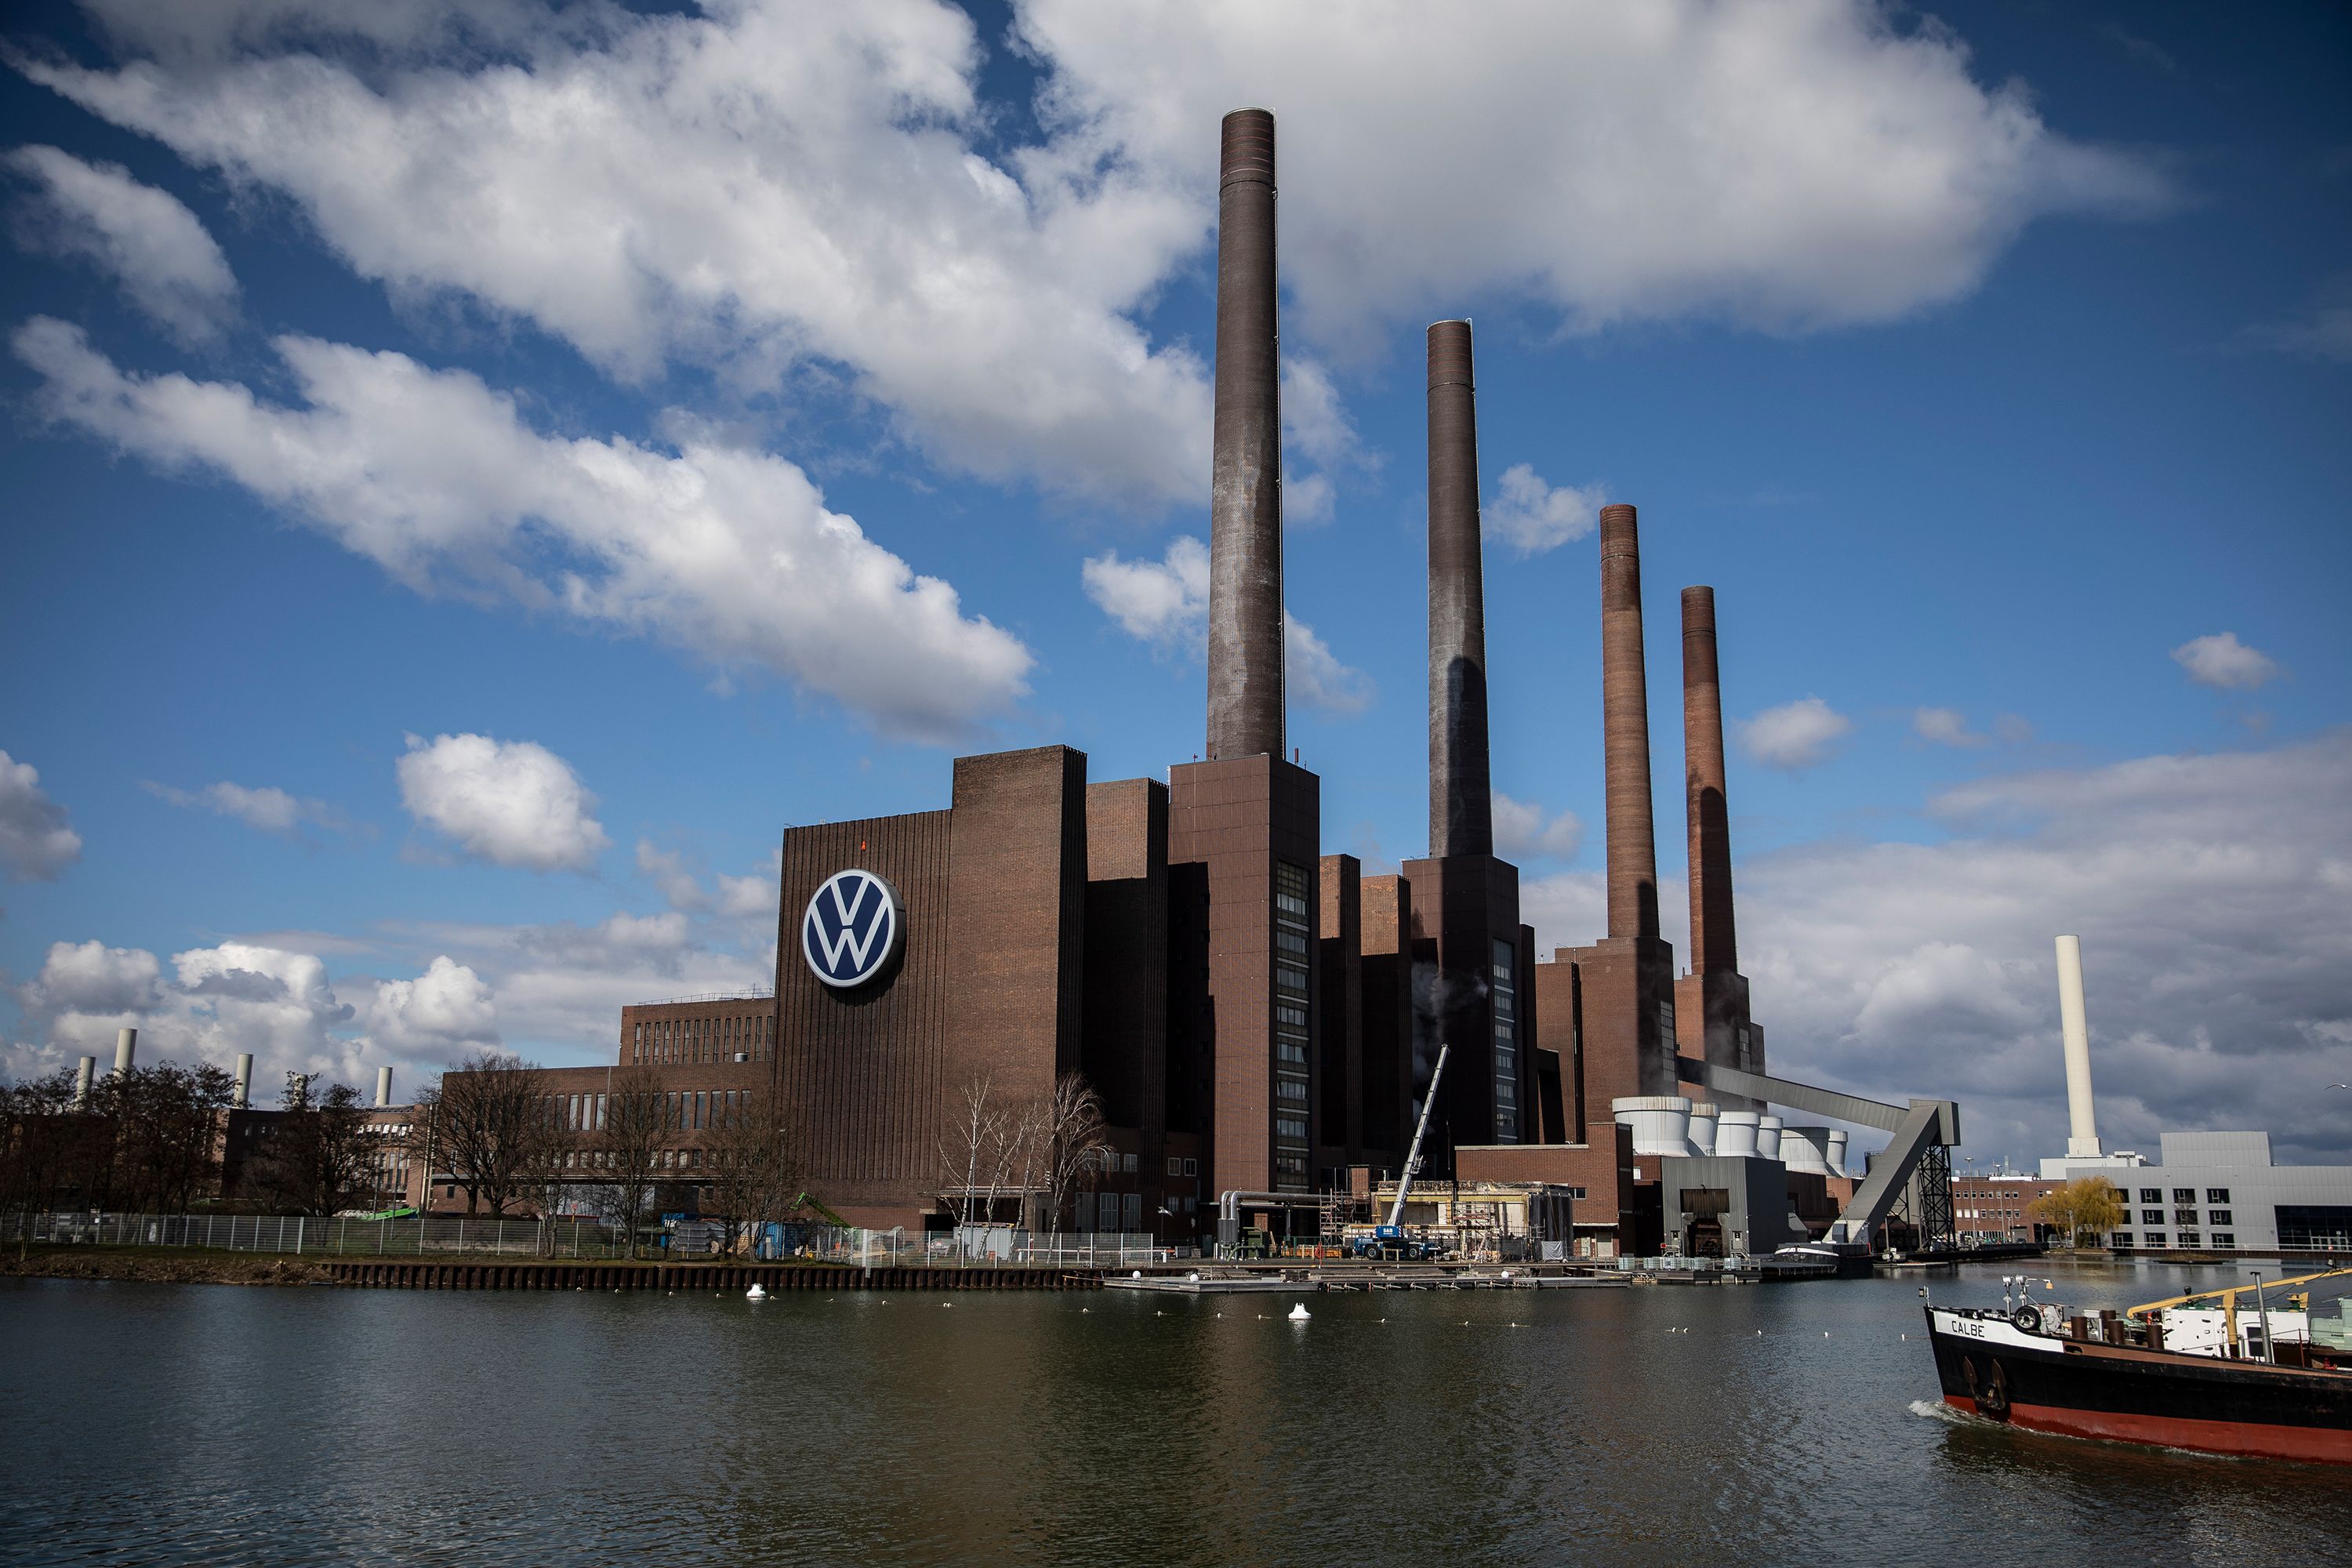 История крупного предприятия. Завод Фольксваген в Германии Вольфсбург. «Volkswagen» в городе Вольфсбург. Завод компании «Volkswagen» в городе Вольфсбург. Завод Volkswagen в Вольфсбурге.